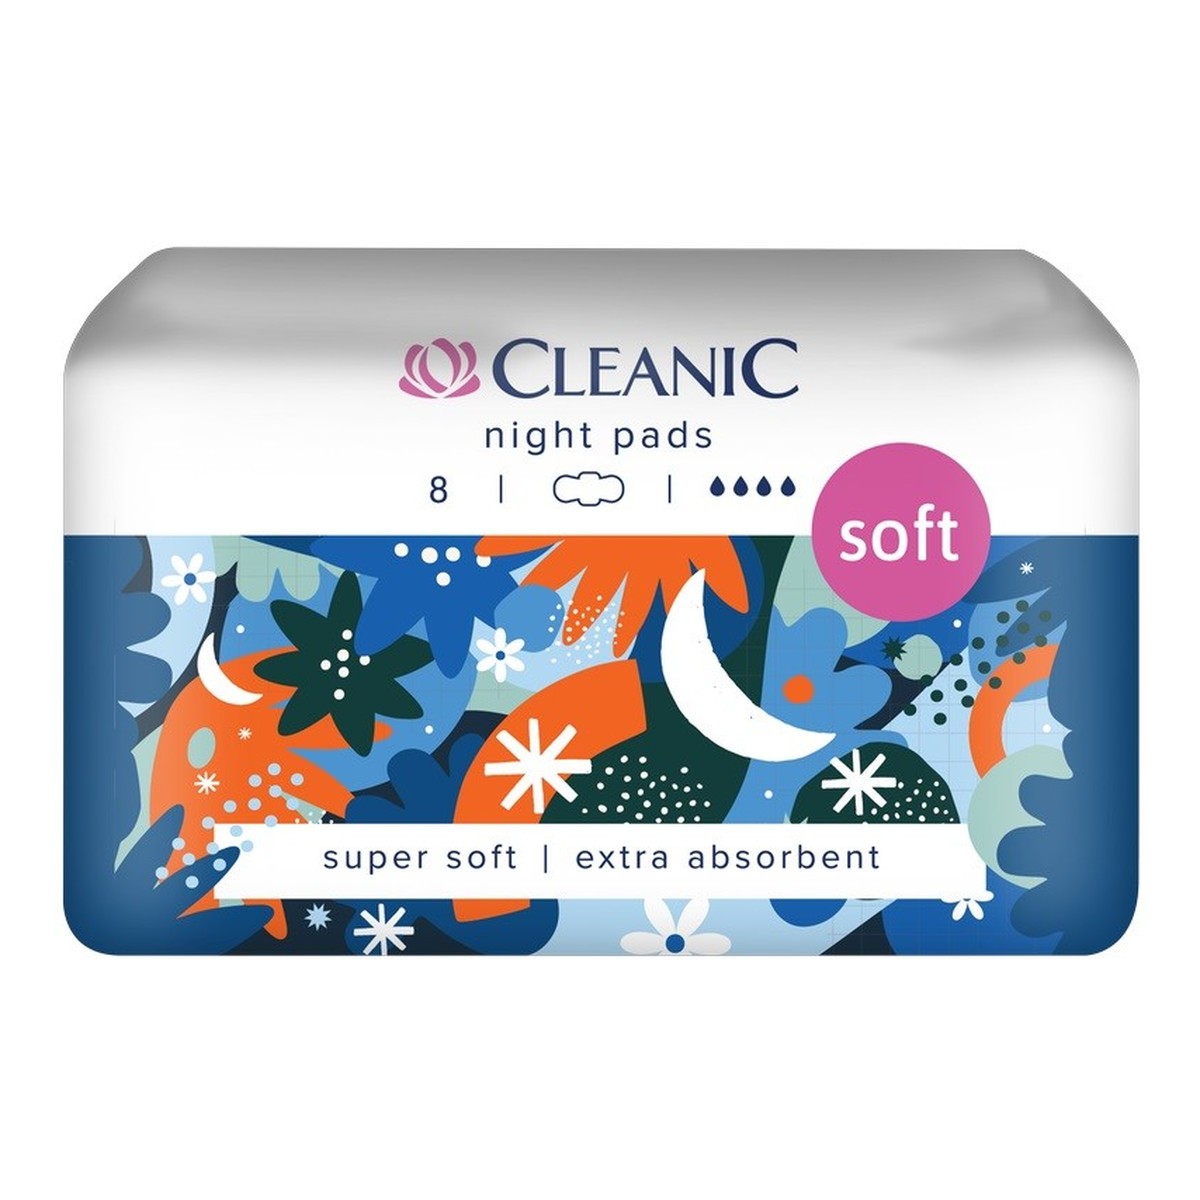 Cleanic Soft Night Podpaski higieniczne dla kobiet 8 sztuk